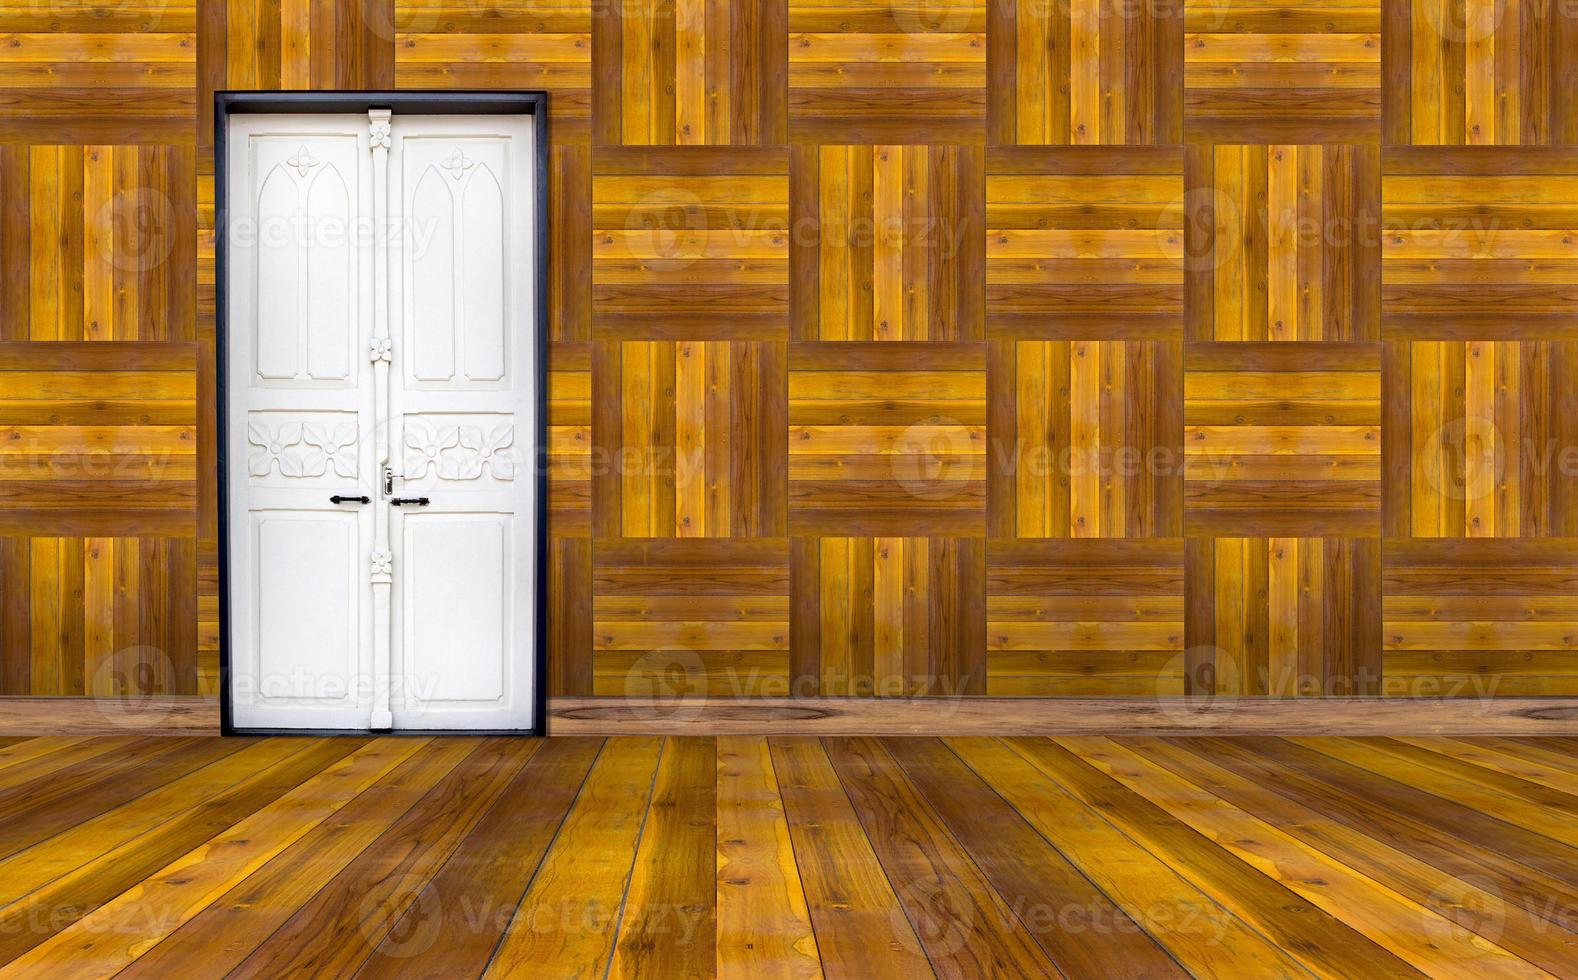 salle vide avec porte blanche et mur en bois photo